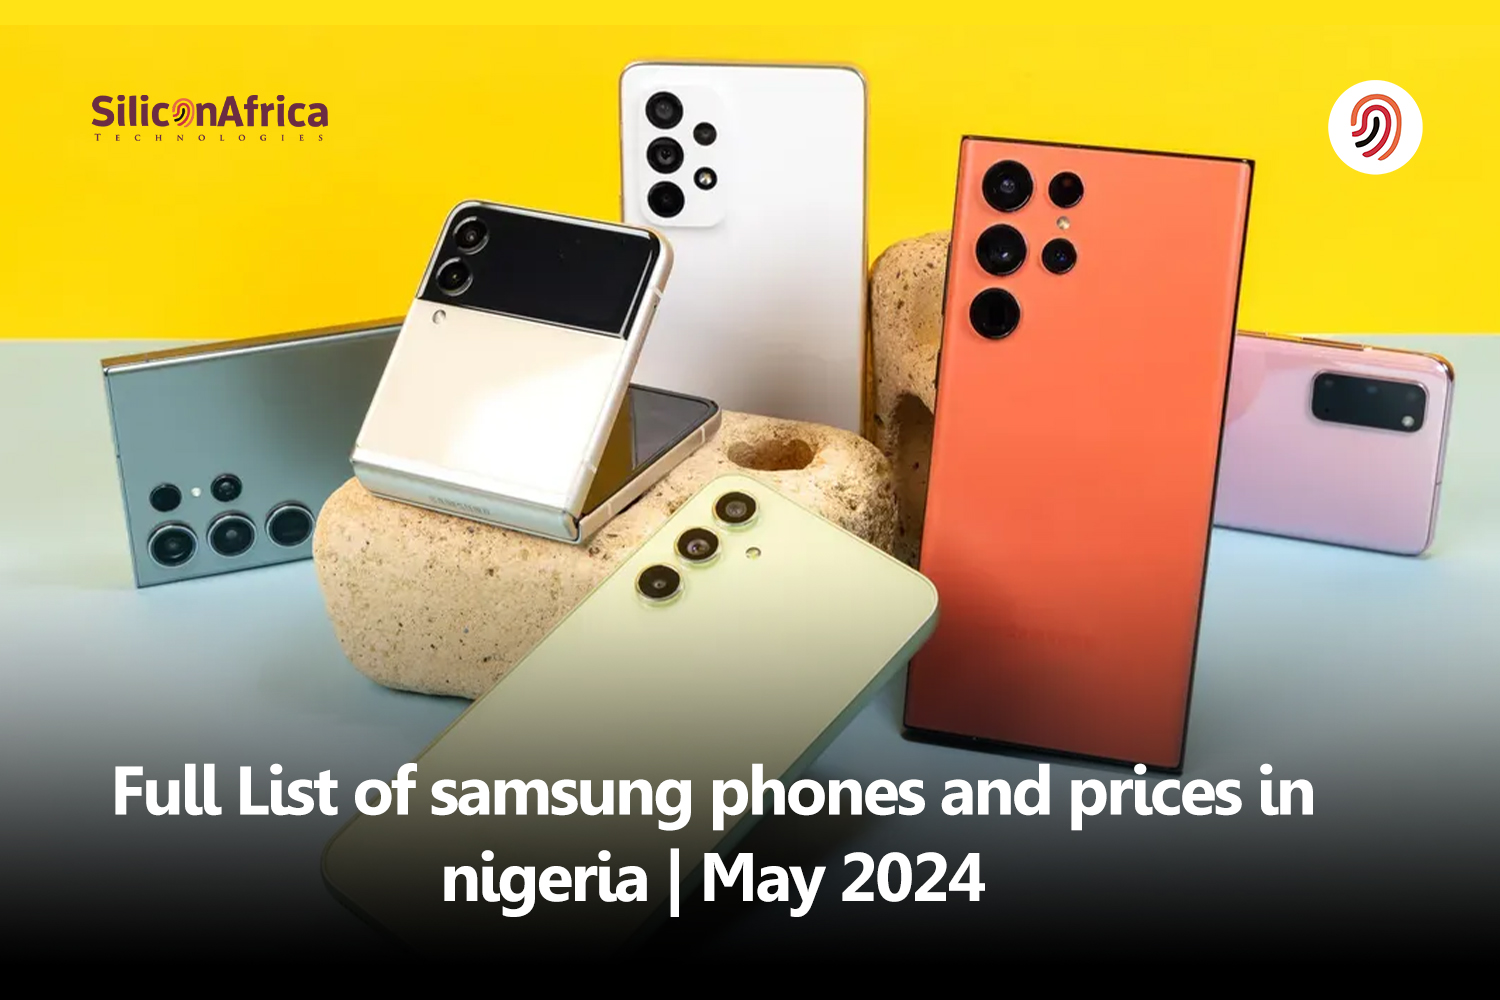 prices of Samsung phones in Nigeria